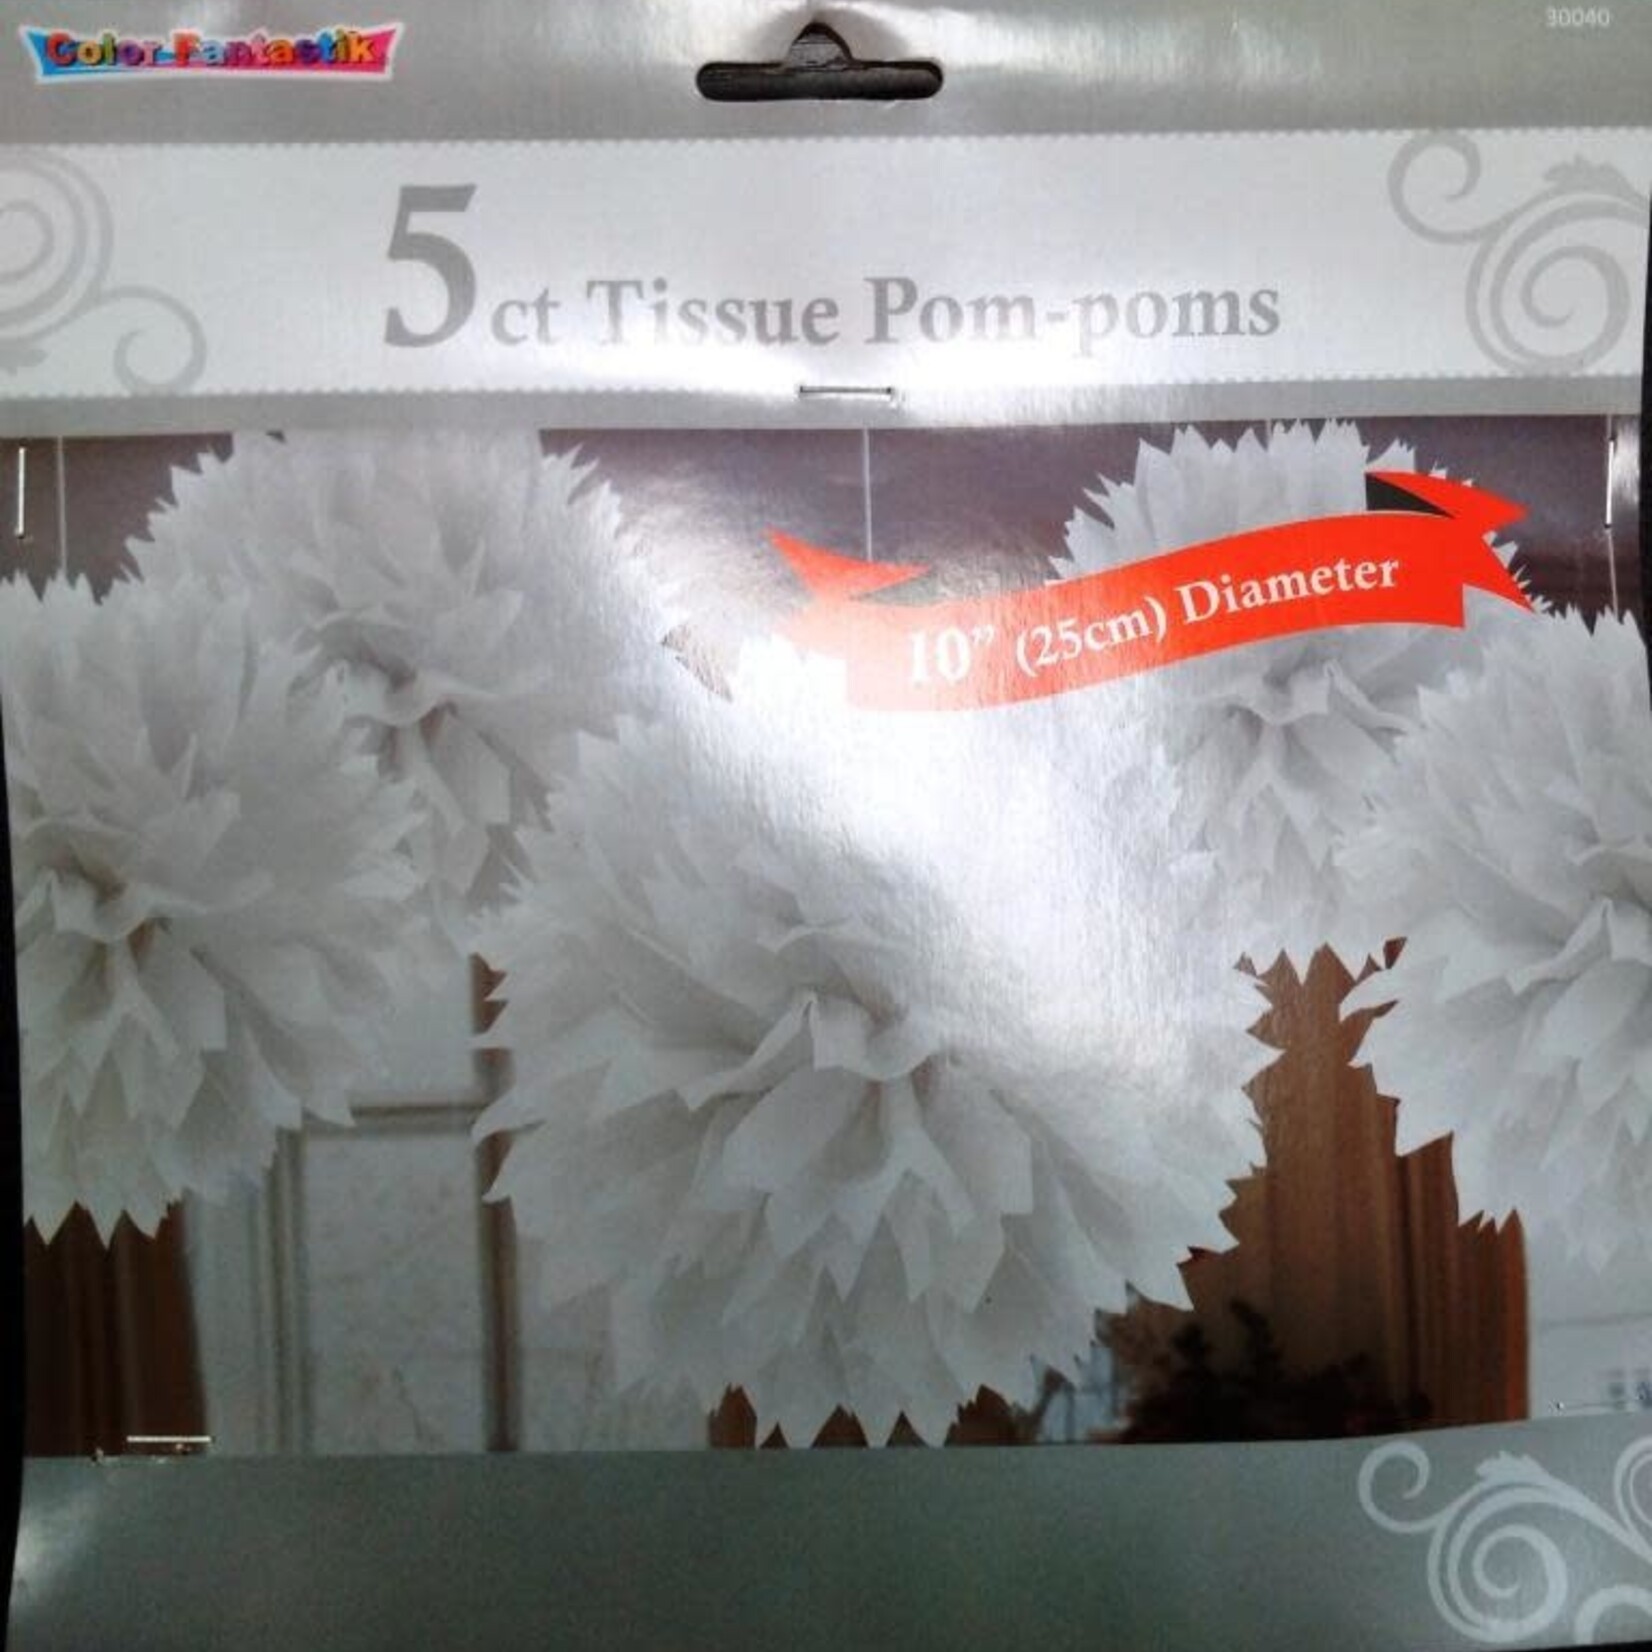 TISSUE POM-POMS 5ct White 10 Inches